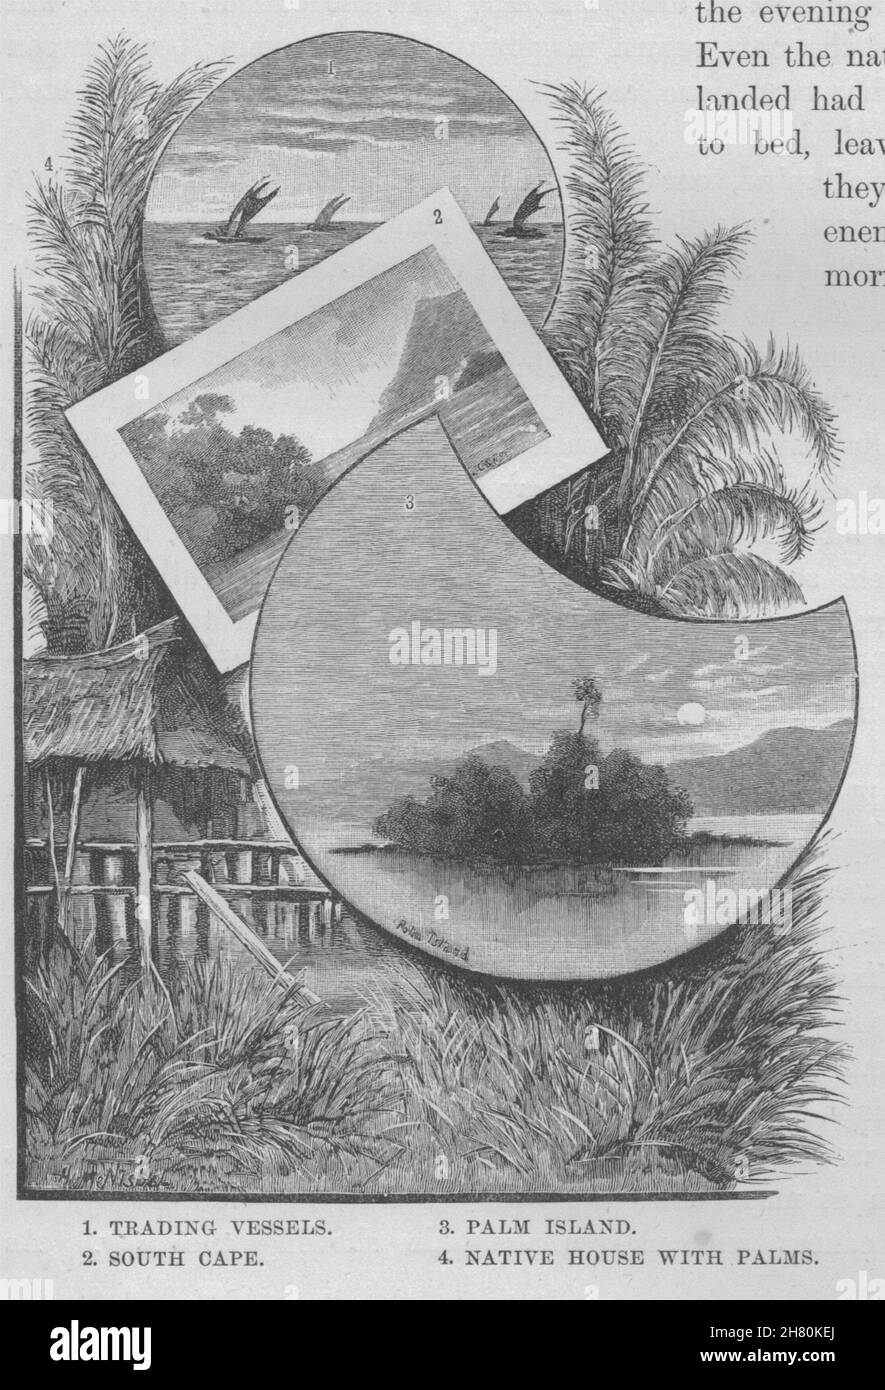 Los buques comerciales. Al sur del Cabo. Palm Island. Casa natal de palmas. Nueva Guinea 1890 Foto de stock